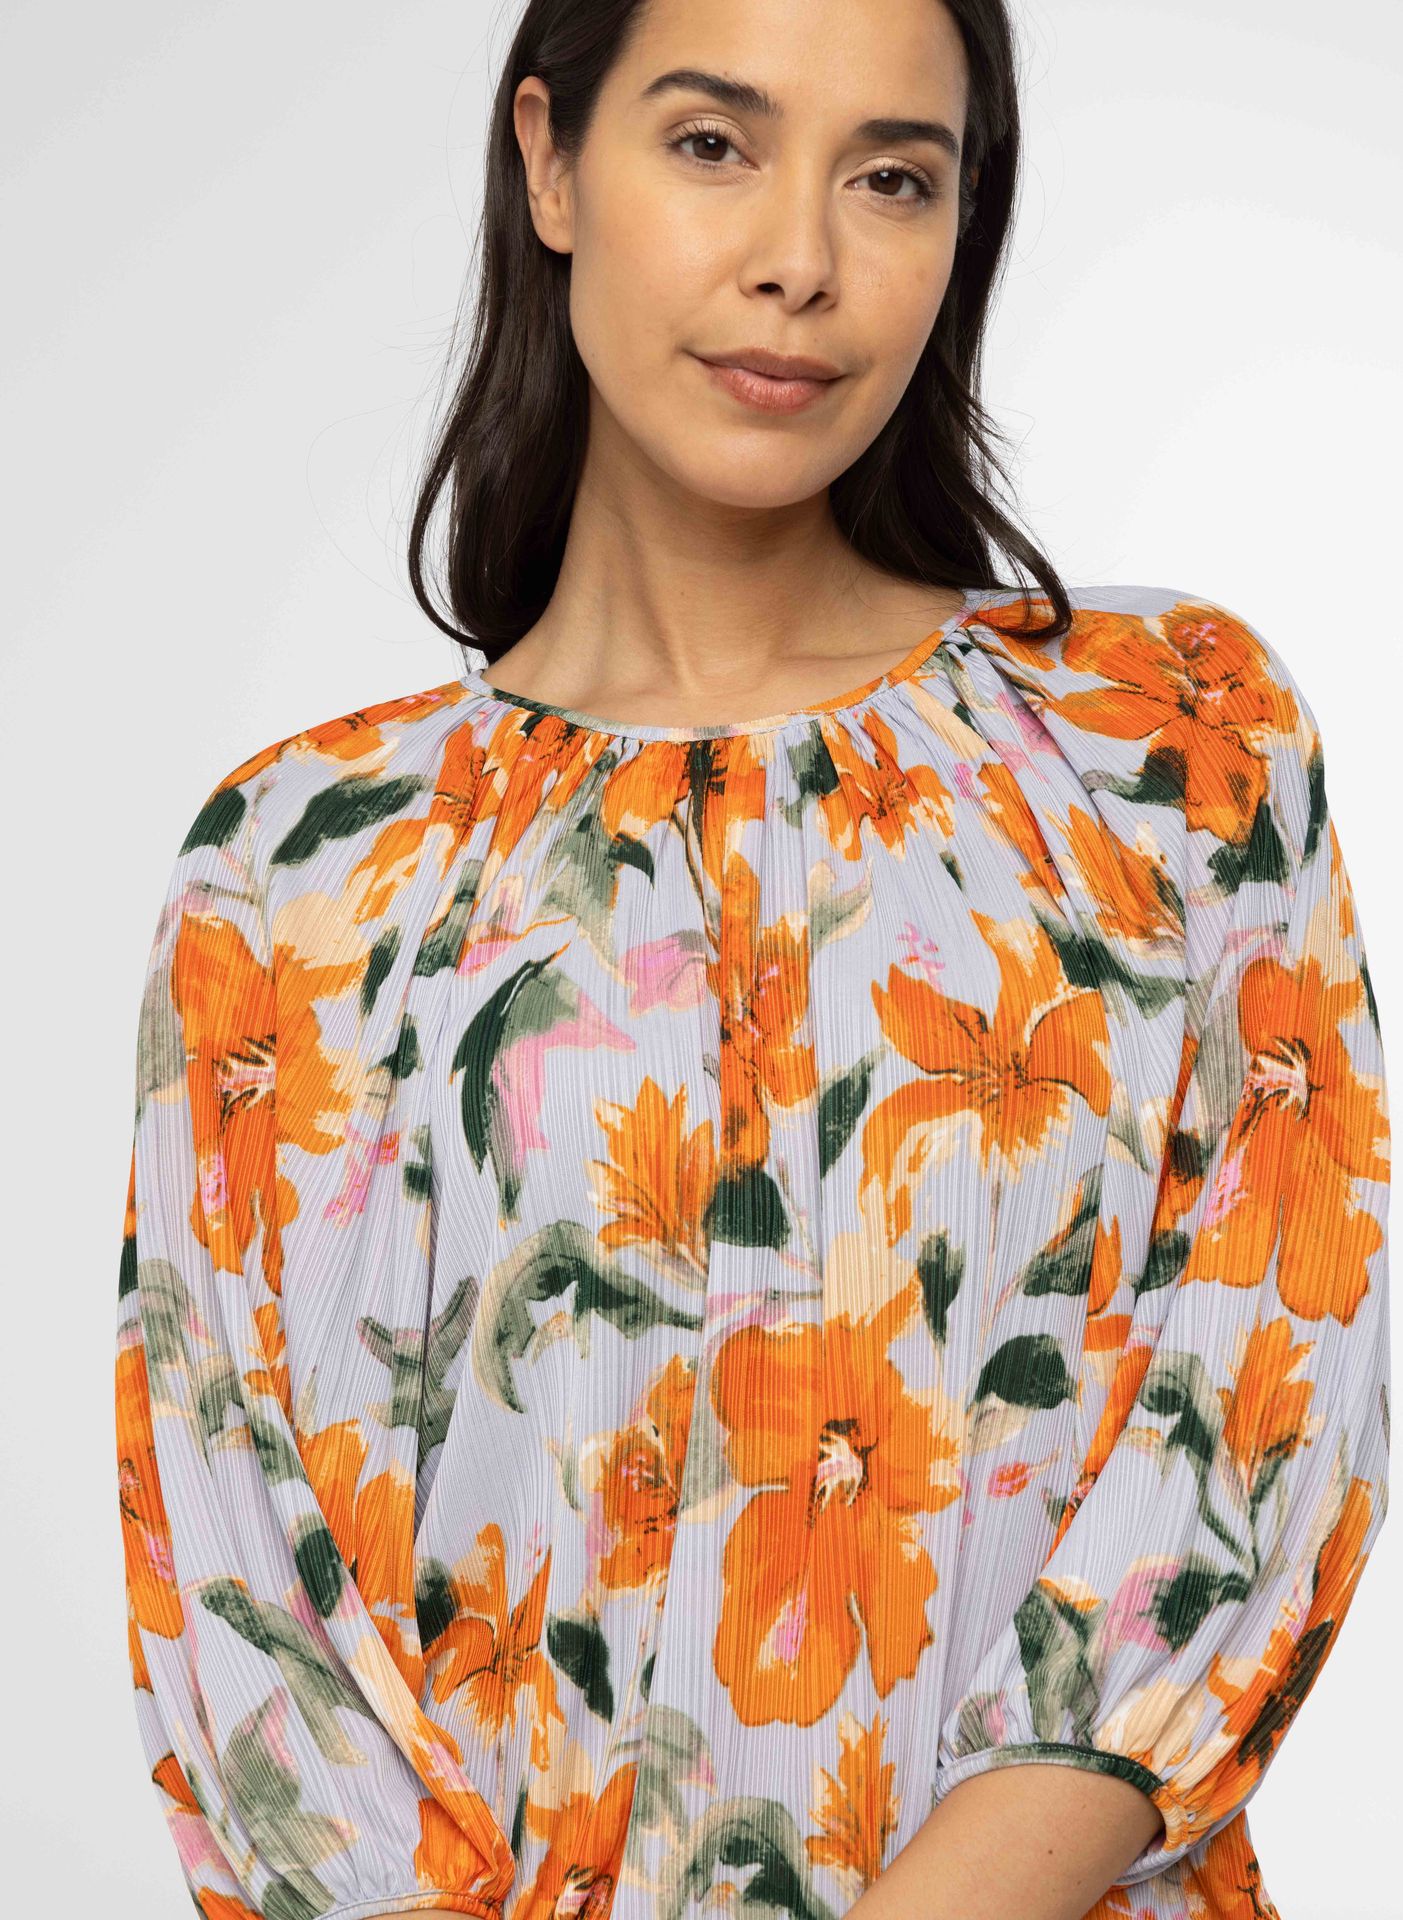 Norah Shirt met bloemenprint lilac multicolor 214141-801